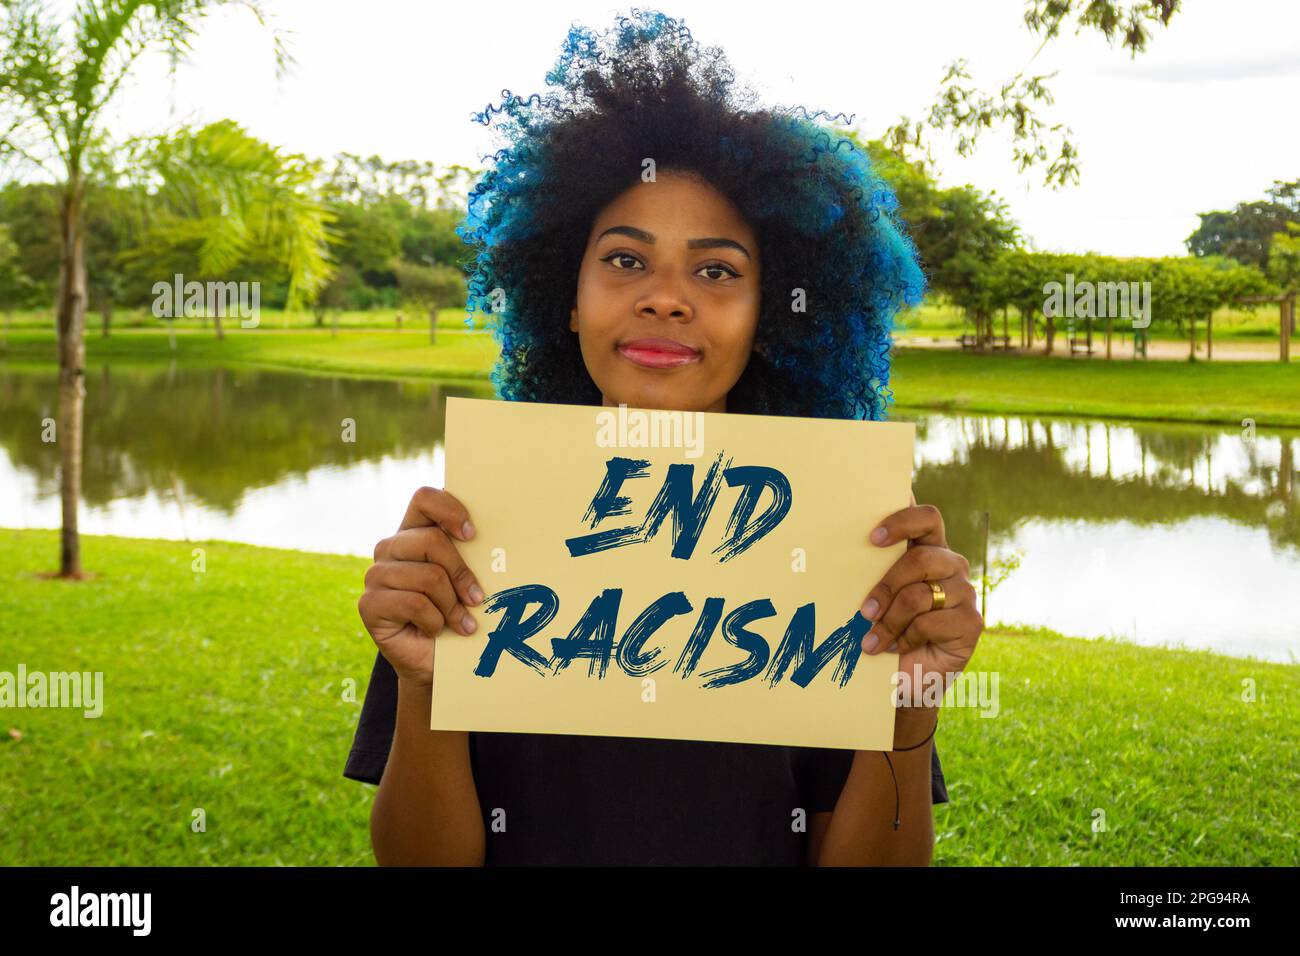 Goiania, Goias, Brésil – 21 mars 2023: Une jeune femme, avec des cheveux bleus teints, tenant un signe avec le texte: 'Mettre fin au racisme'. Banque D'Images